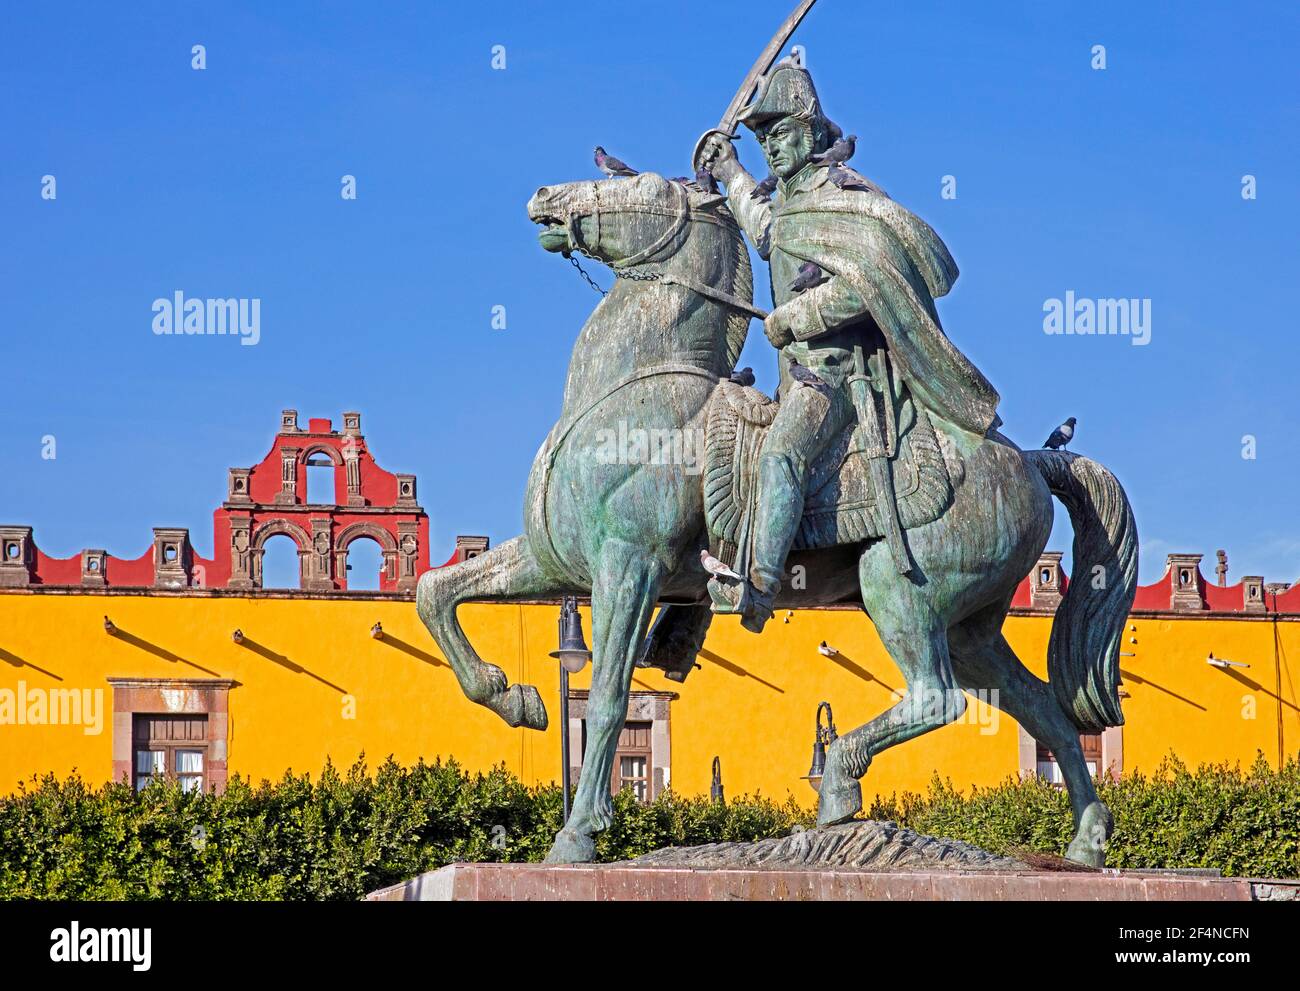 Statue équestre d'Ignacio Allende, héros de la guerre d'indépendance mexicaine à la Plaza Civica dans la ville de San Miguel de Allende, Guanajuato, Mexique Banque D'Images